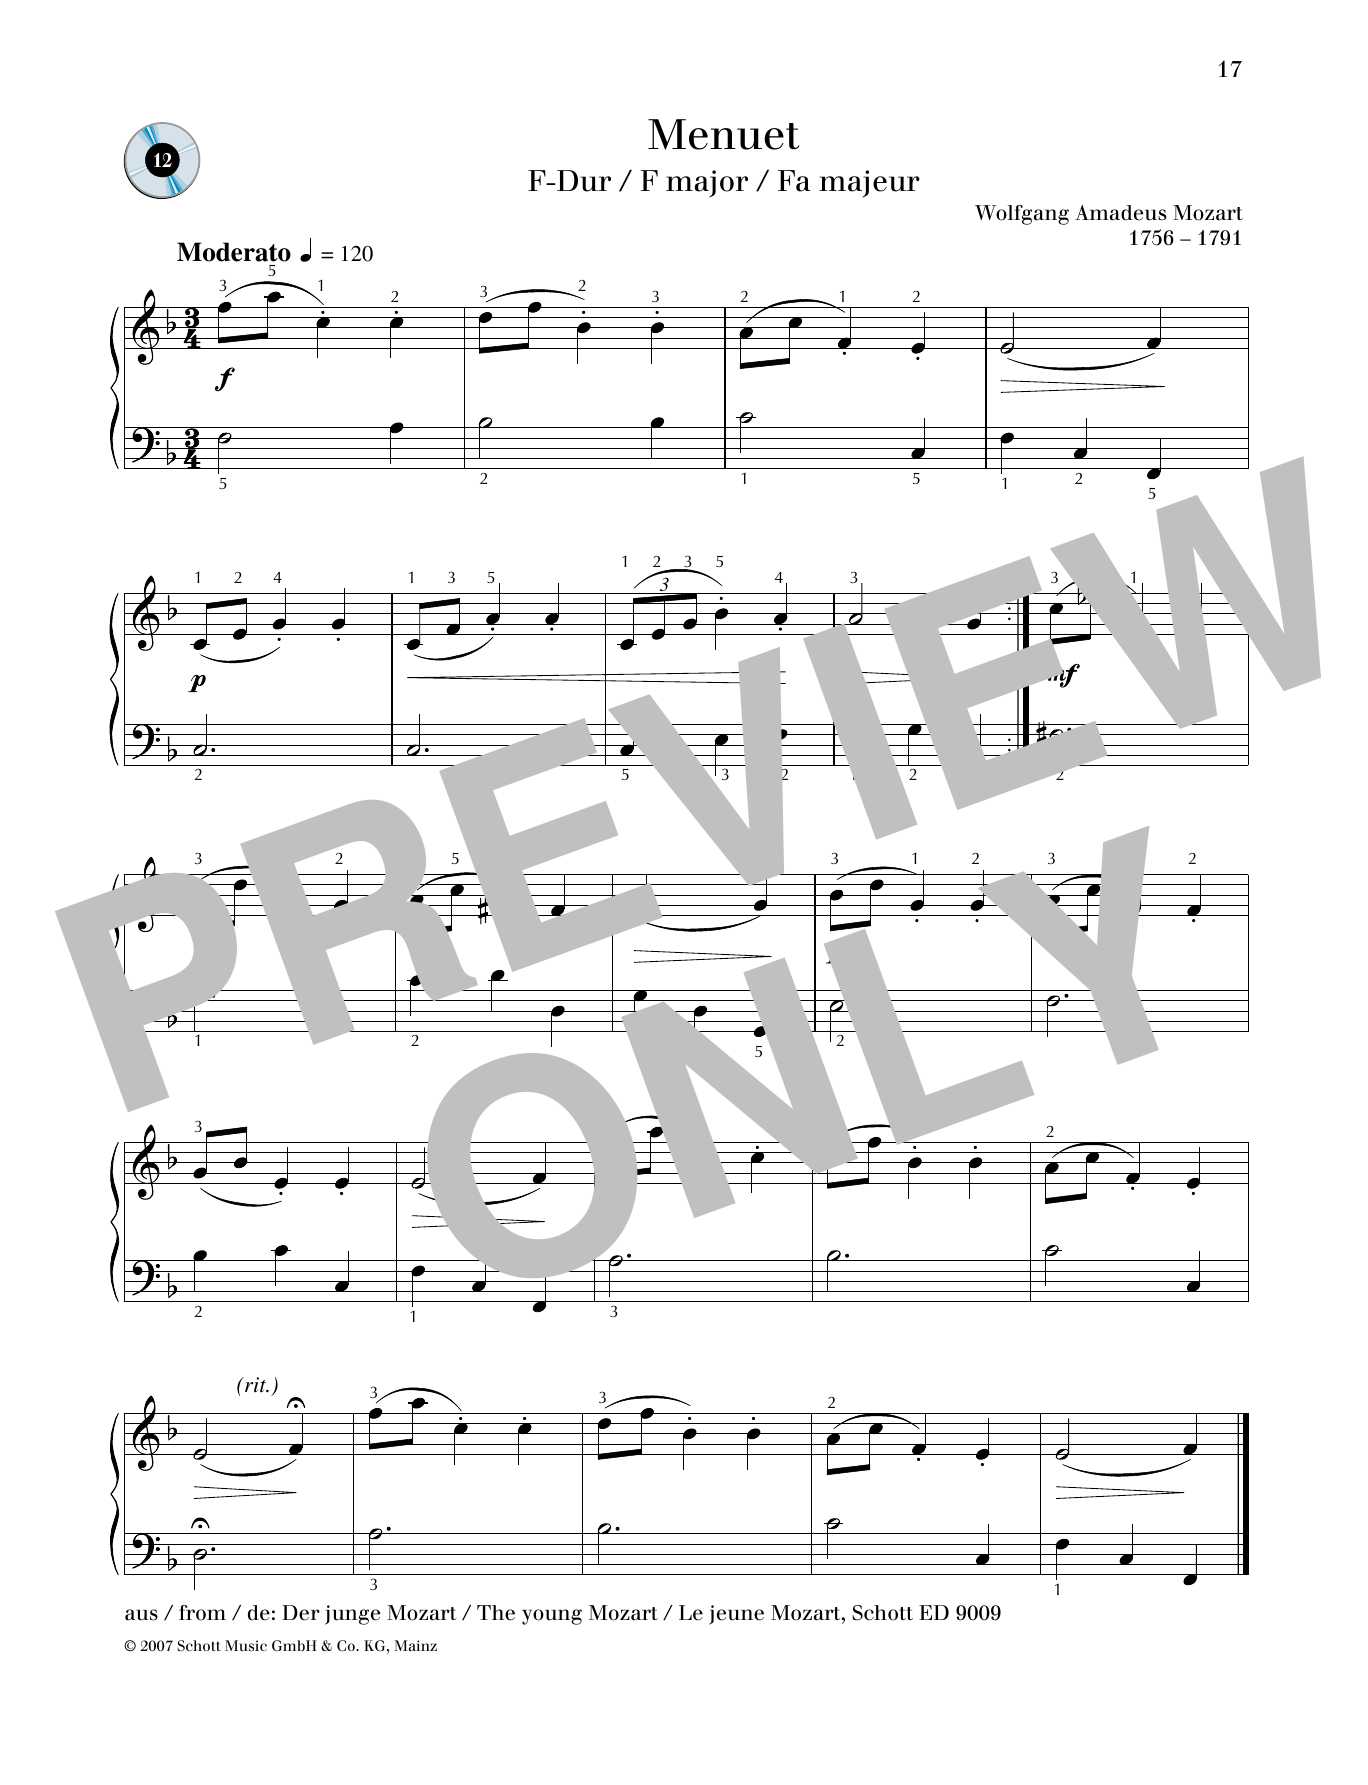 Download Wolfgang Amadeus Mozart Minuet F major Sheet Music